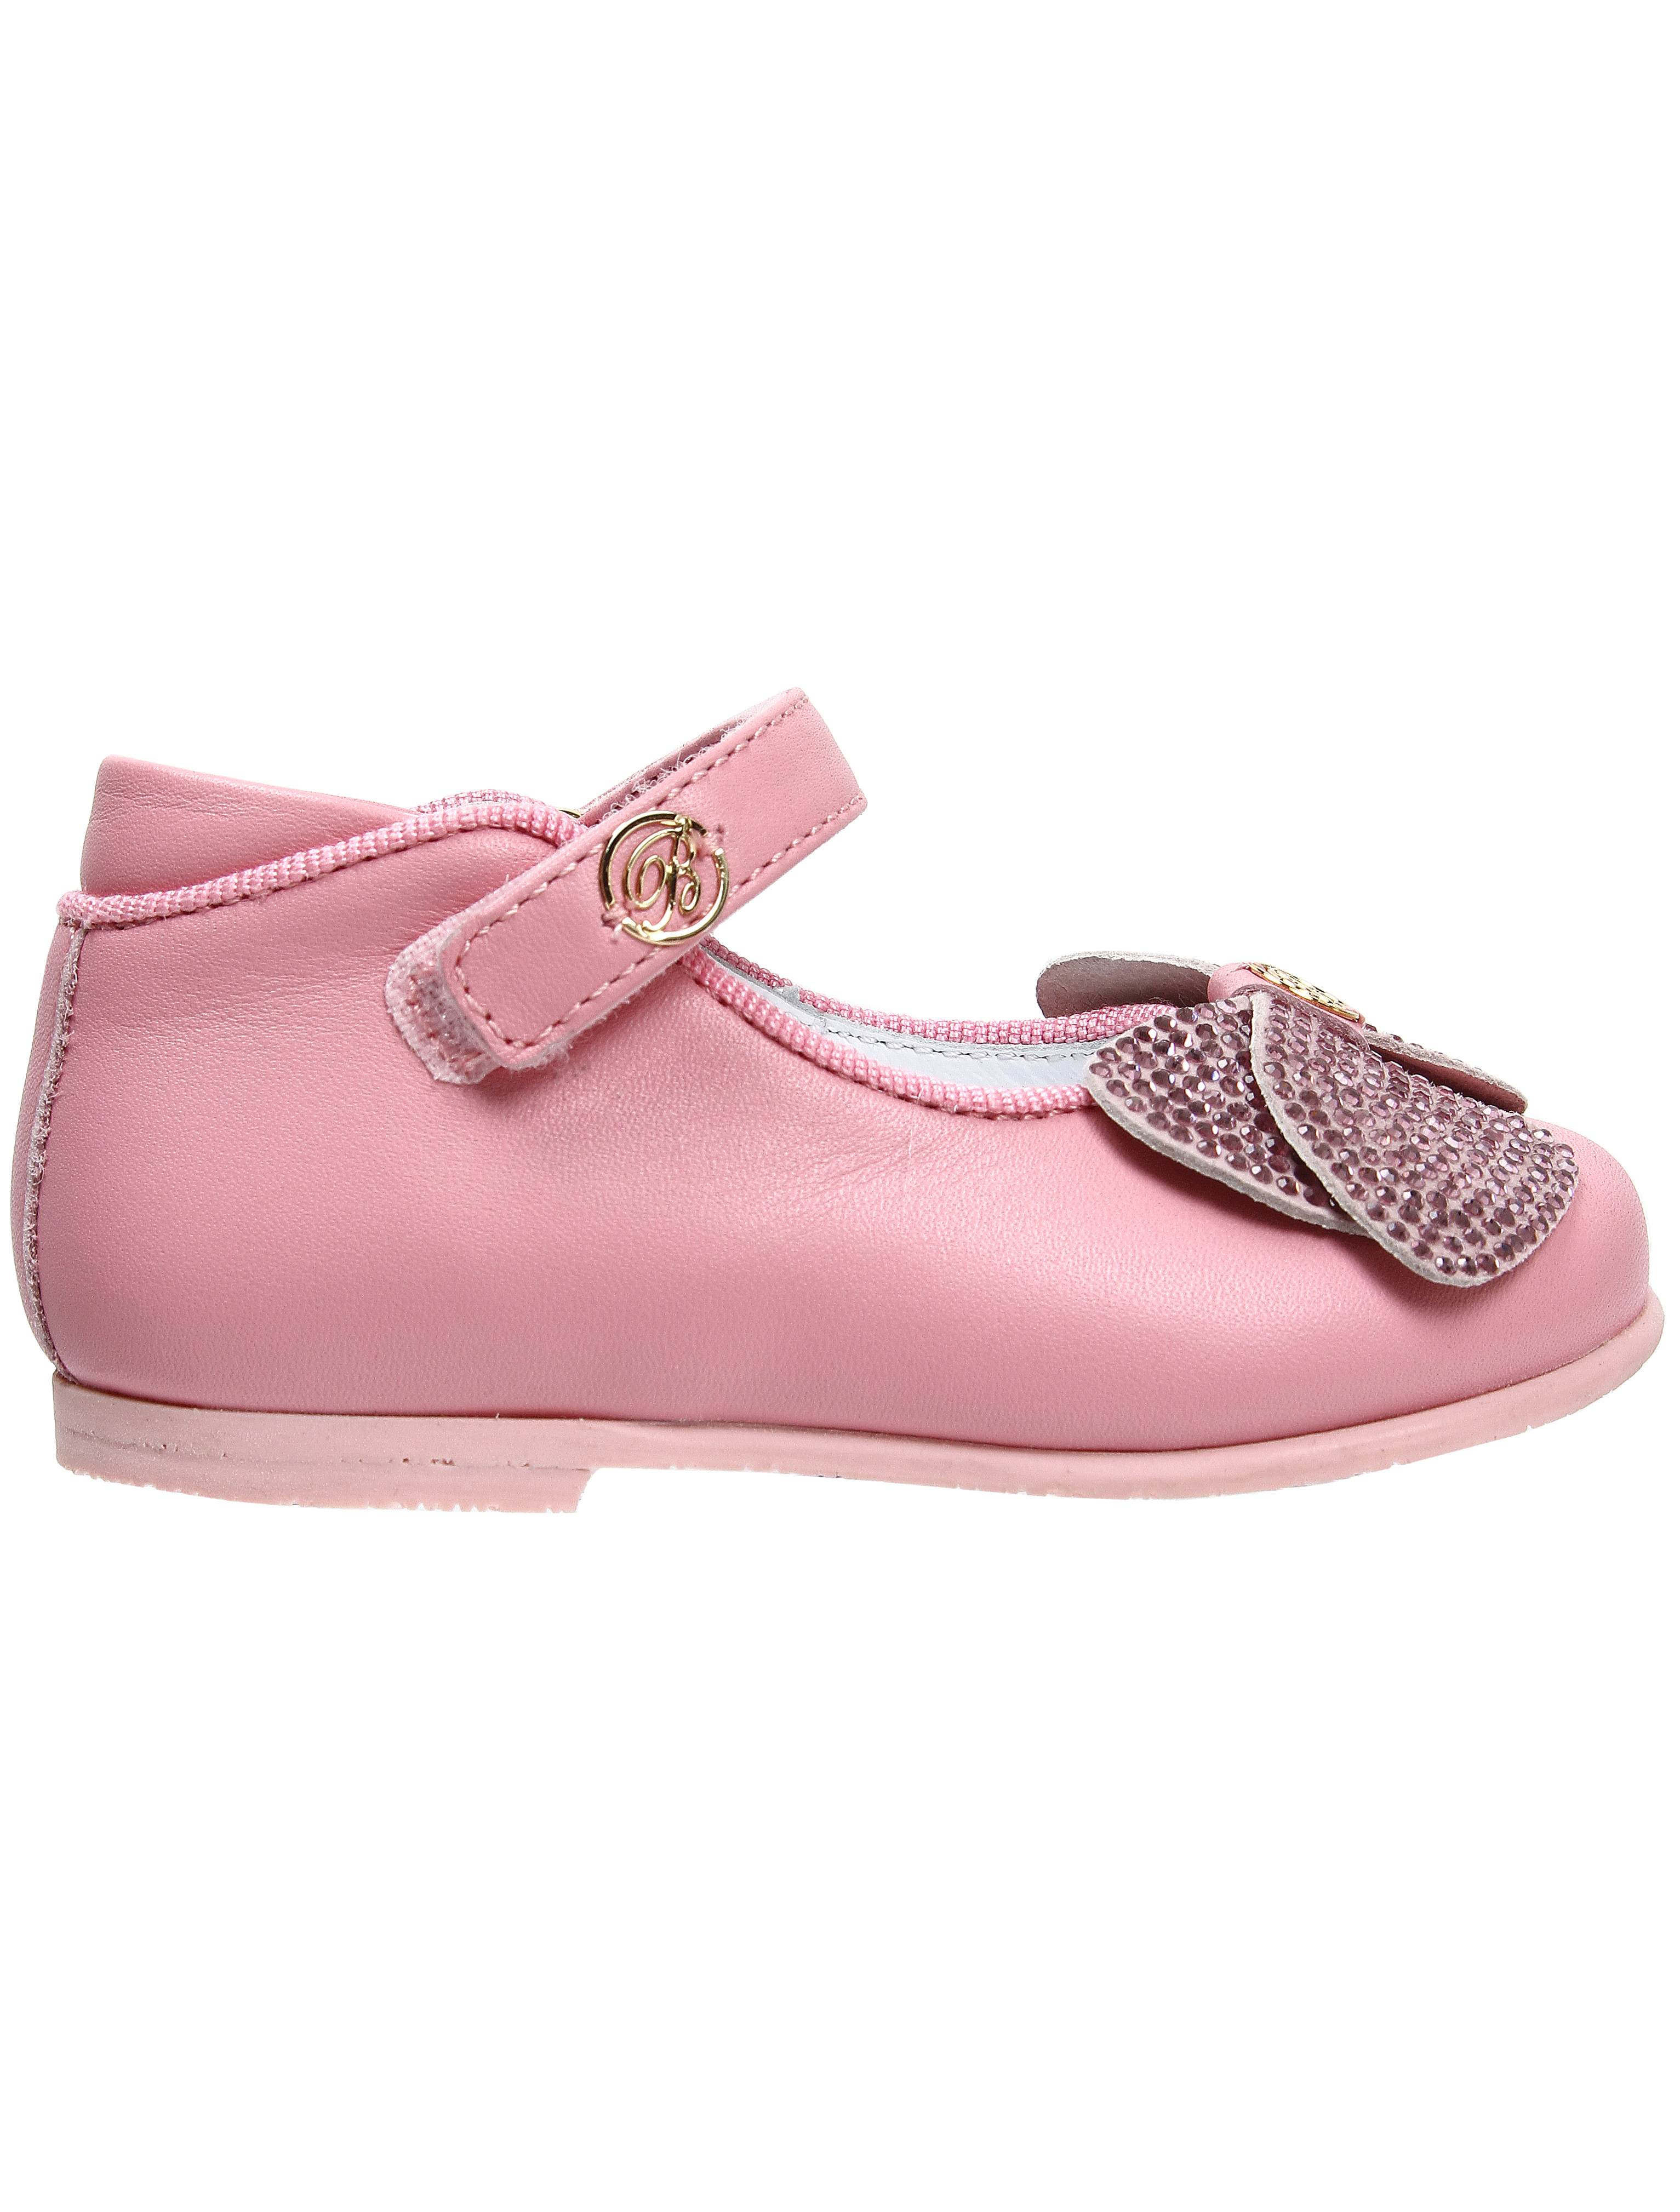 Туфли Miss Blumarine 1914121, цвет розовый, размер 21 2012609870043 - фото 2